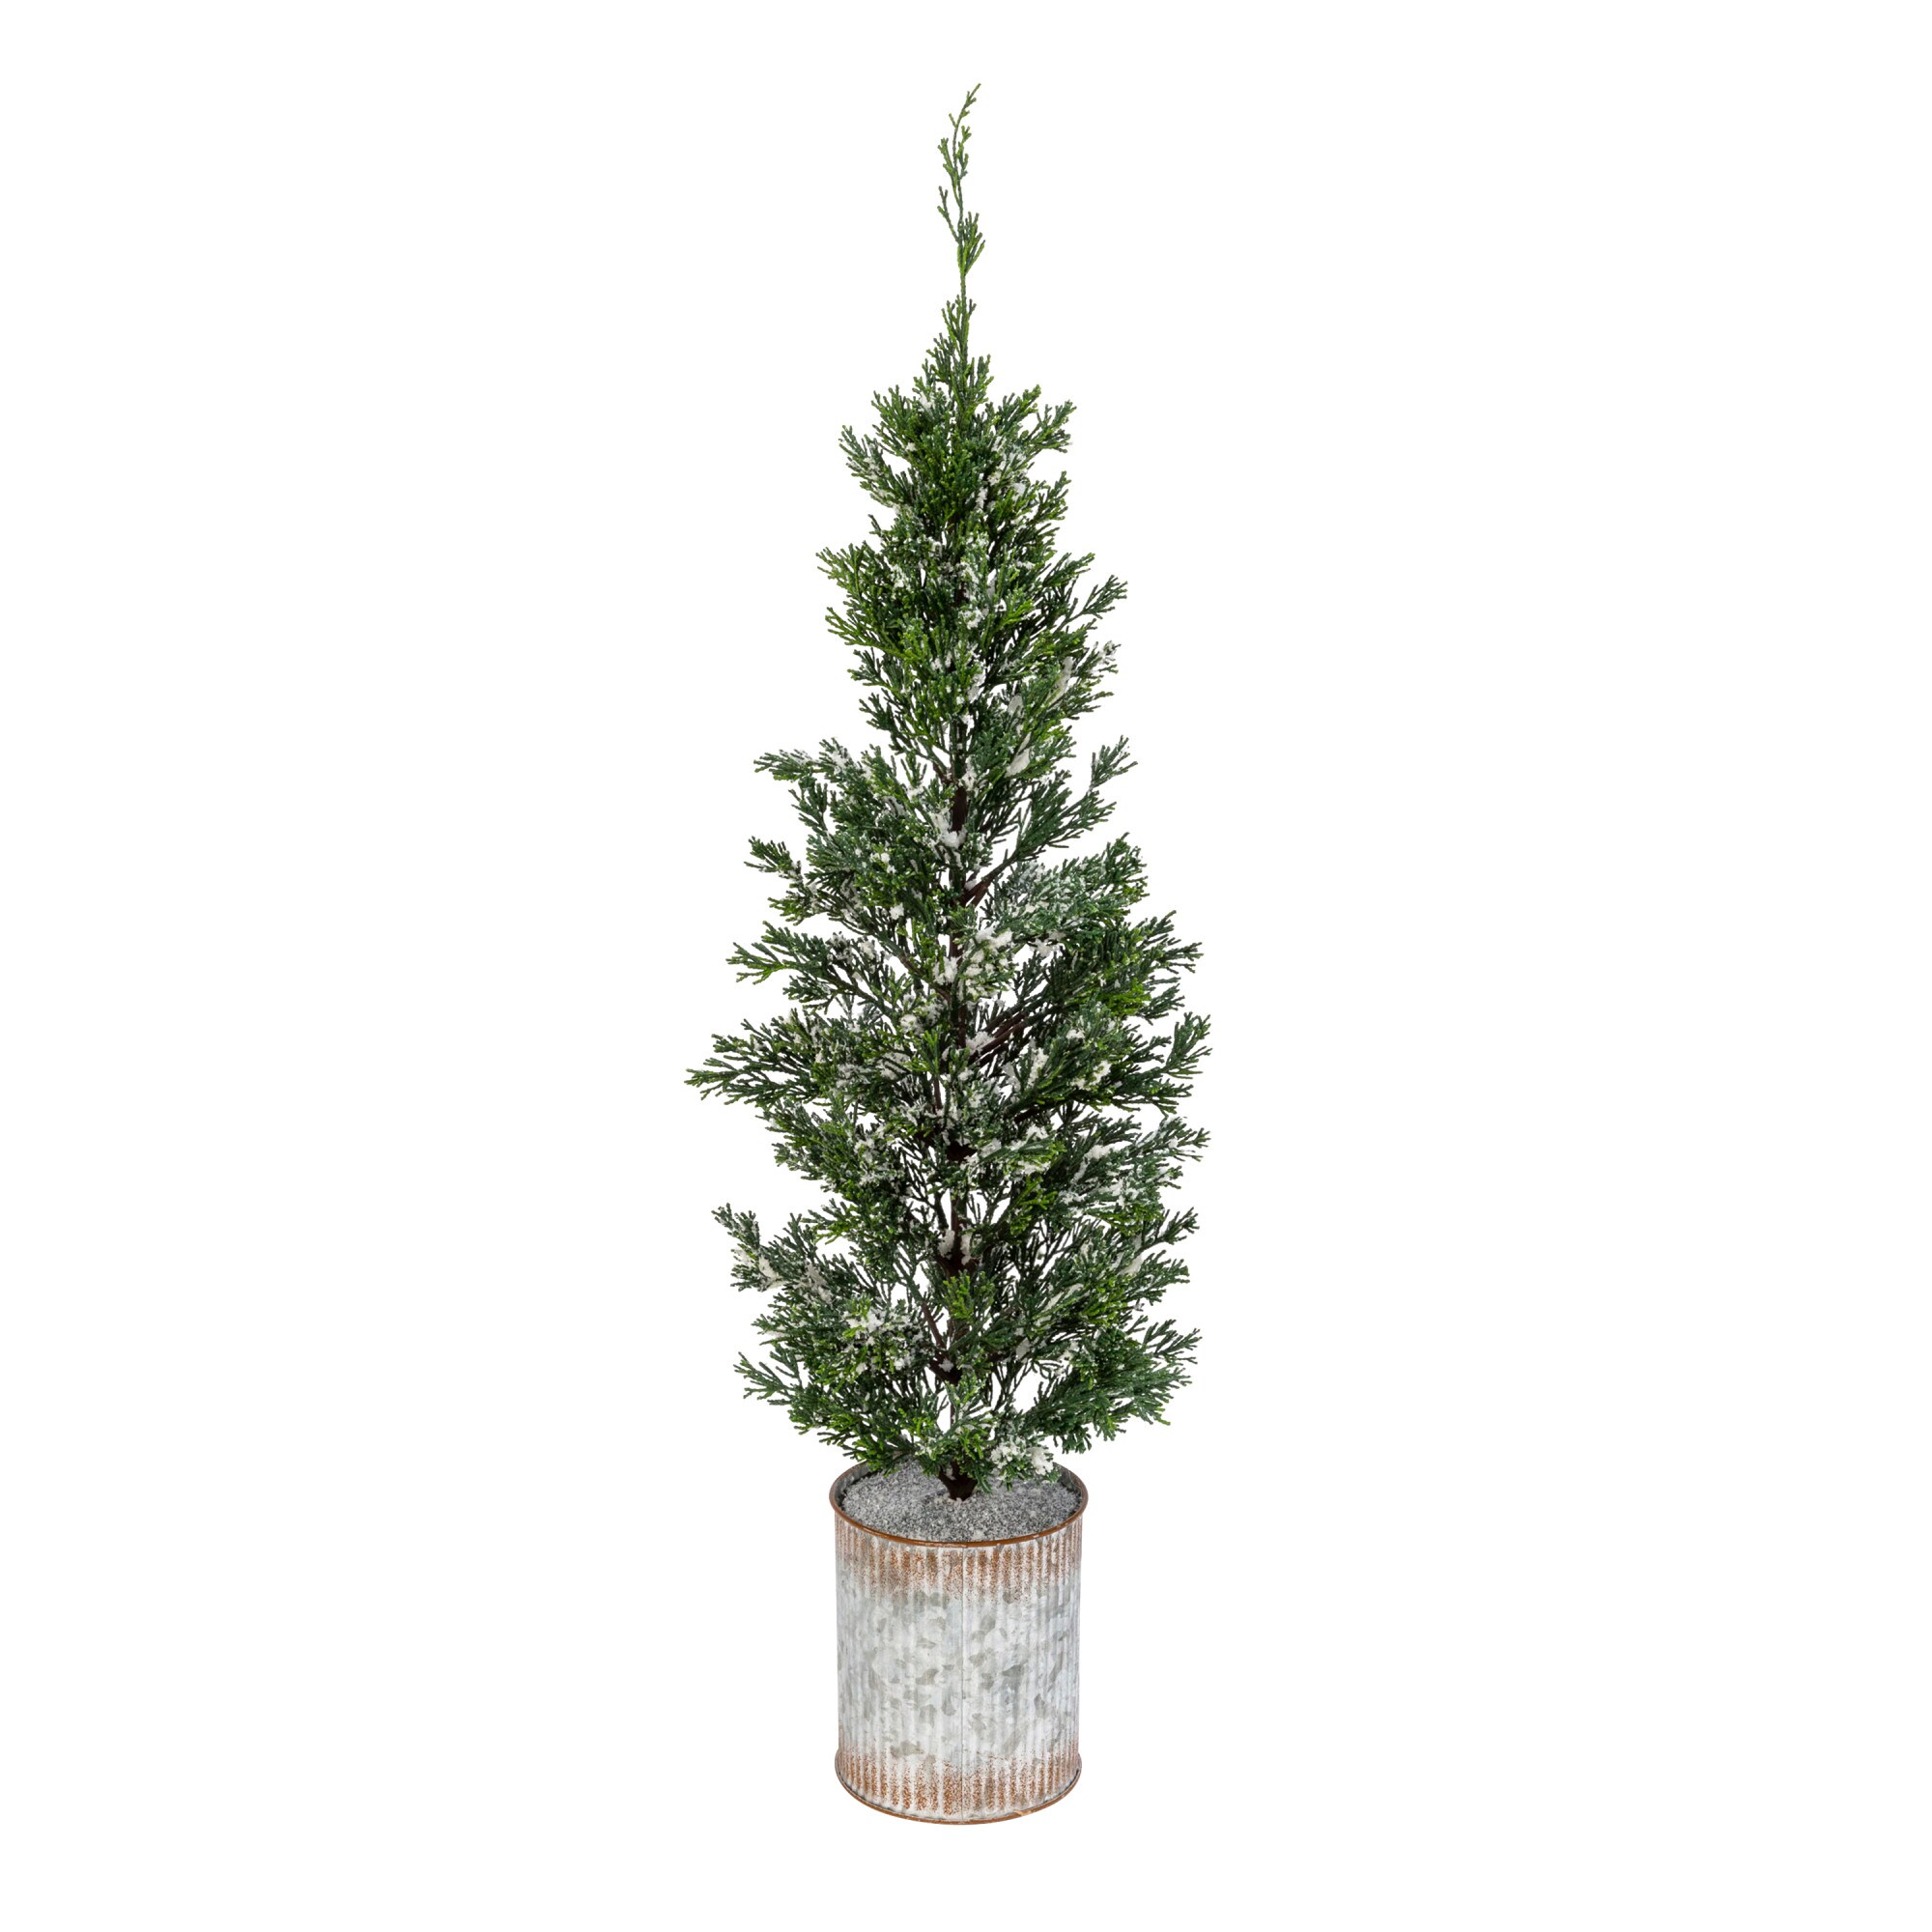 Cedar pine Christmas Trees at Lowes.com